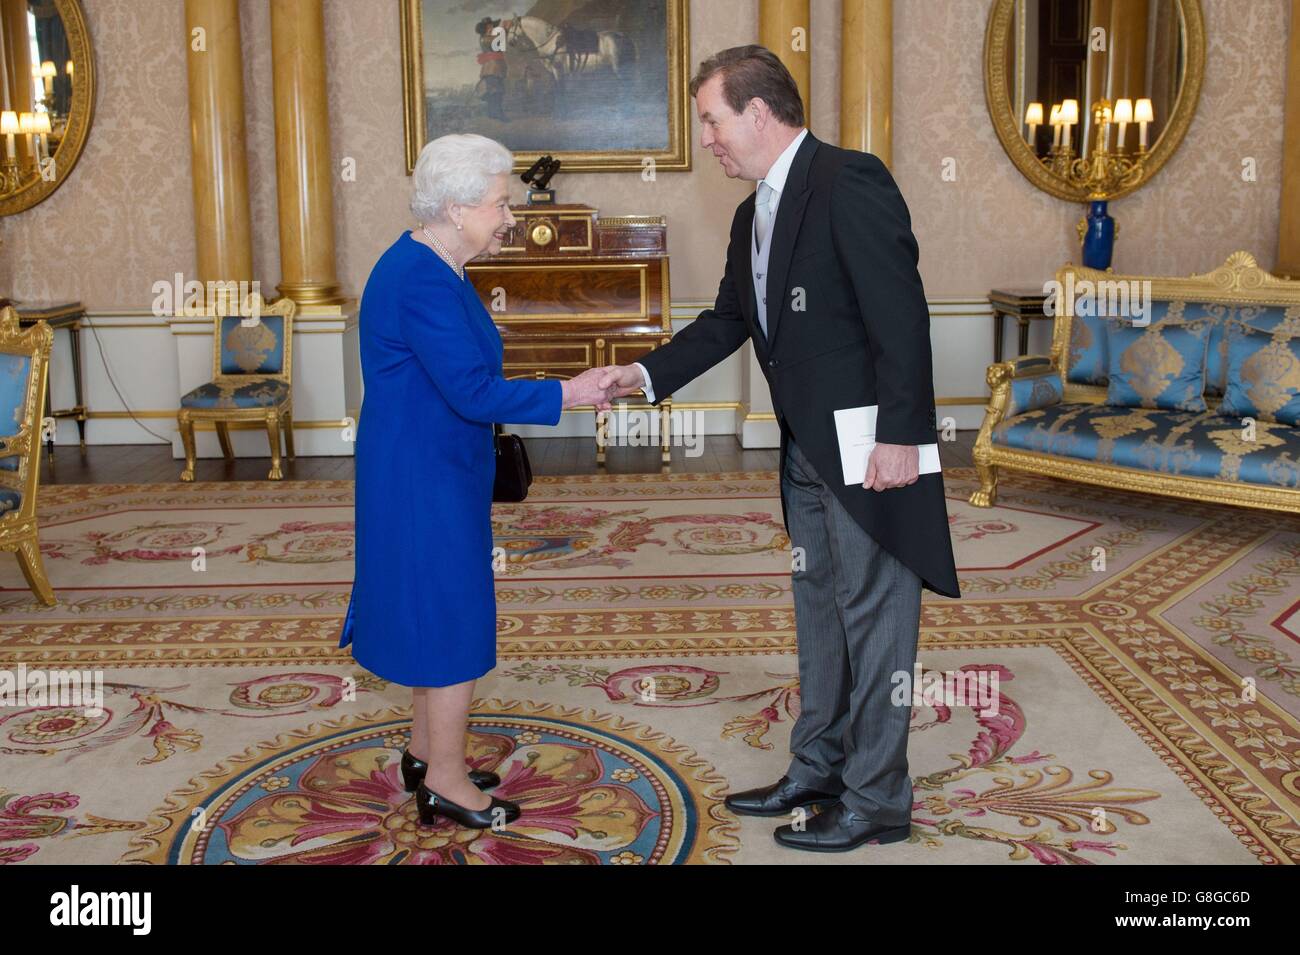 La reine Elizabeth II reçoit son Excellence M. Simon Smits où il a présenté ses lettres de créance en tant qu'ambassadeur du Royaume des pays-Bas à la Cour de St James à Buckingham Palace à Londres. Banque D'Images